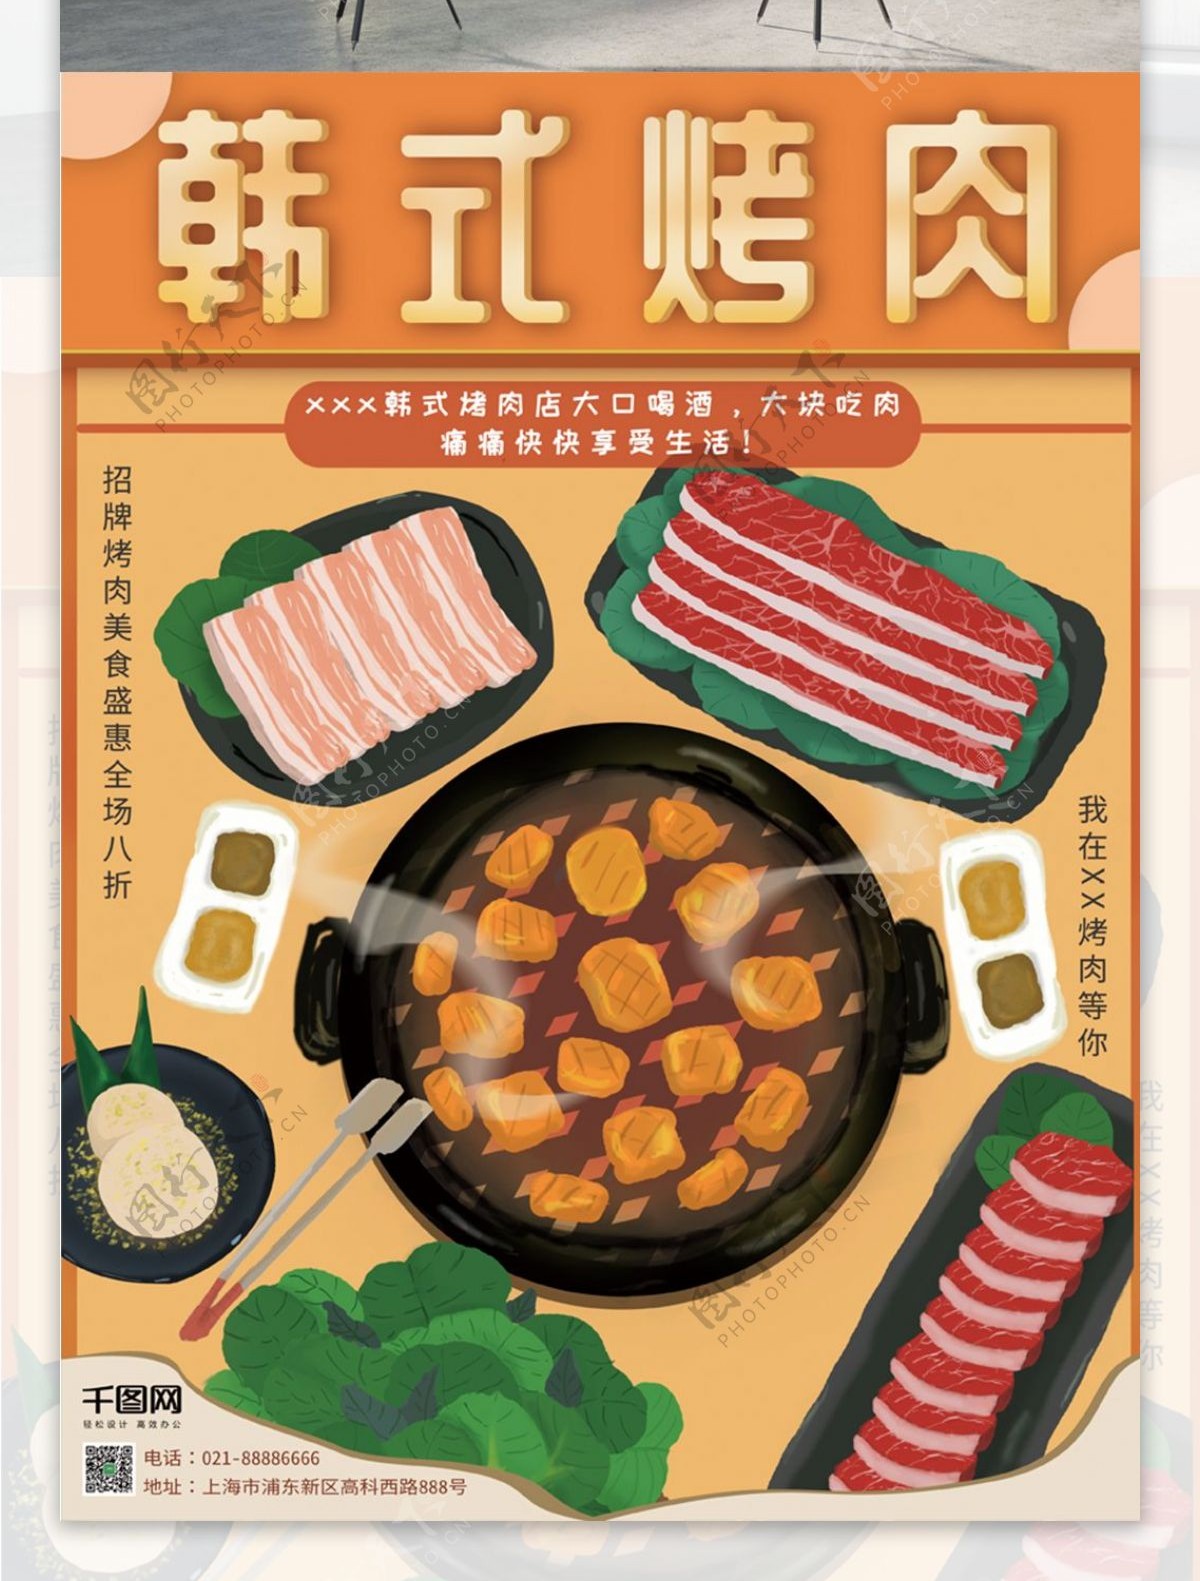 原创手绘韩式烤肉海报